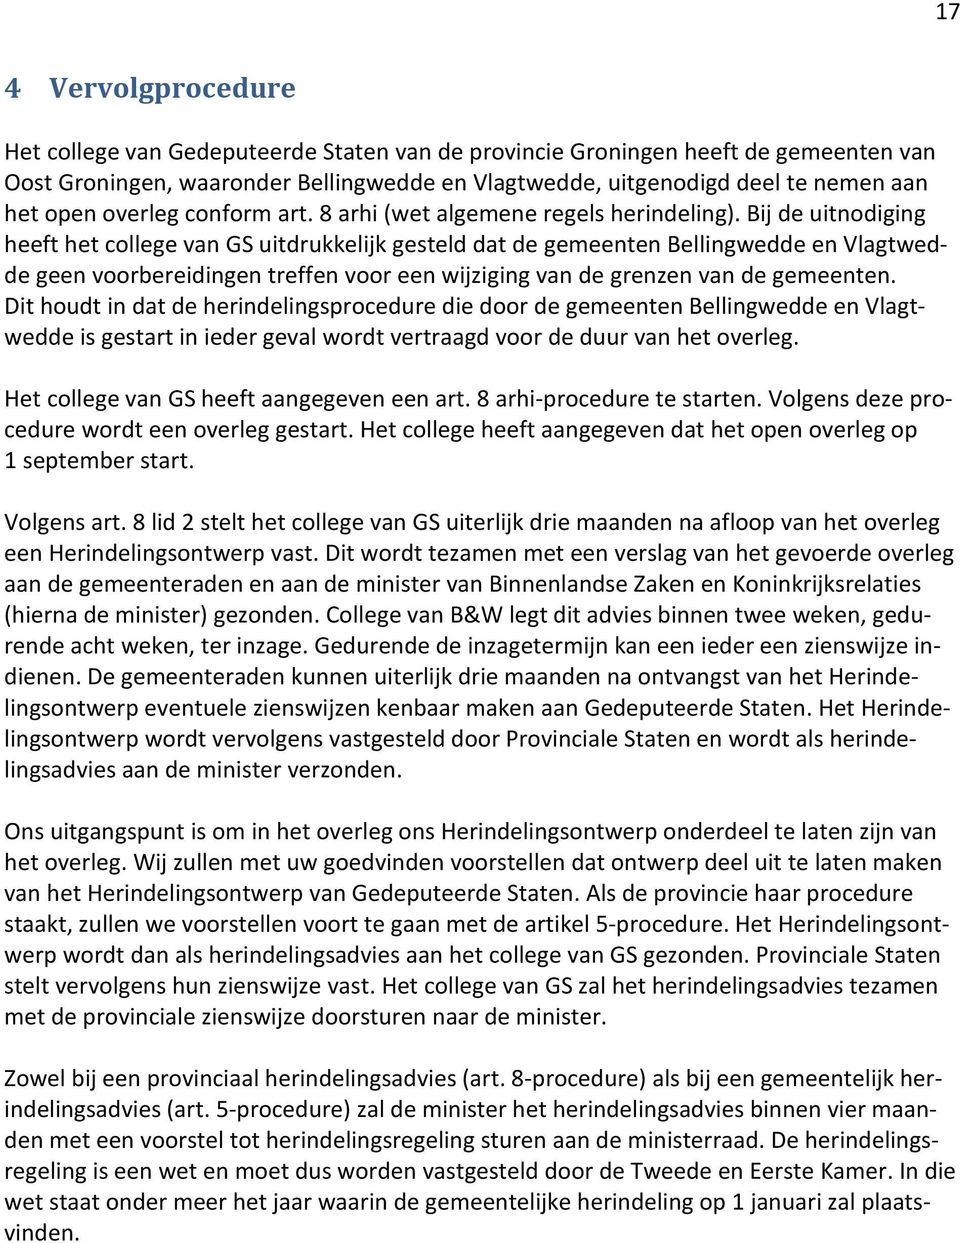 Bij de uitnodiging heeft het college van GS uitdrukkelijk gesteld dat de gemeenten Bellingwedde en Vlagtwedde geen voorbereidingen treffen voor een wijziging van de grenzen van de gemeenten.